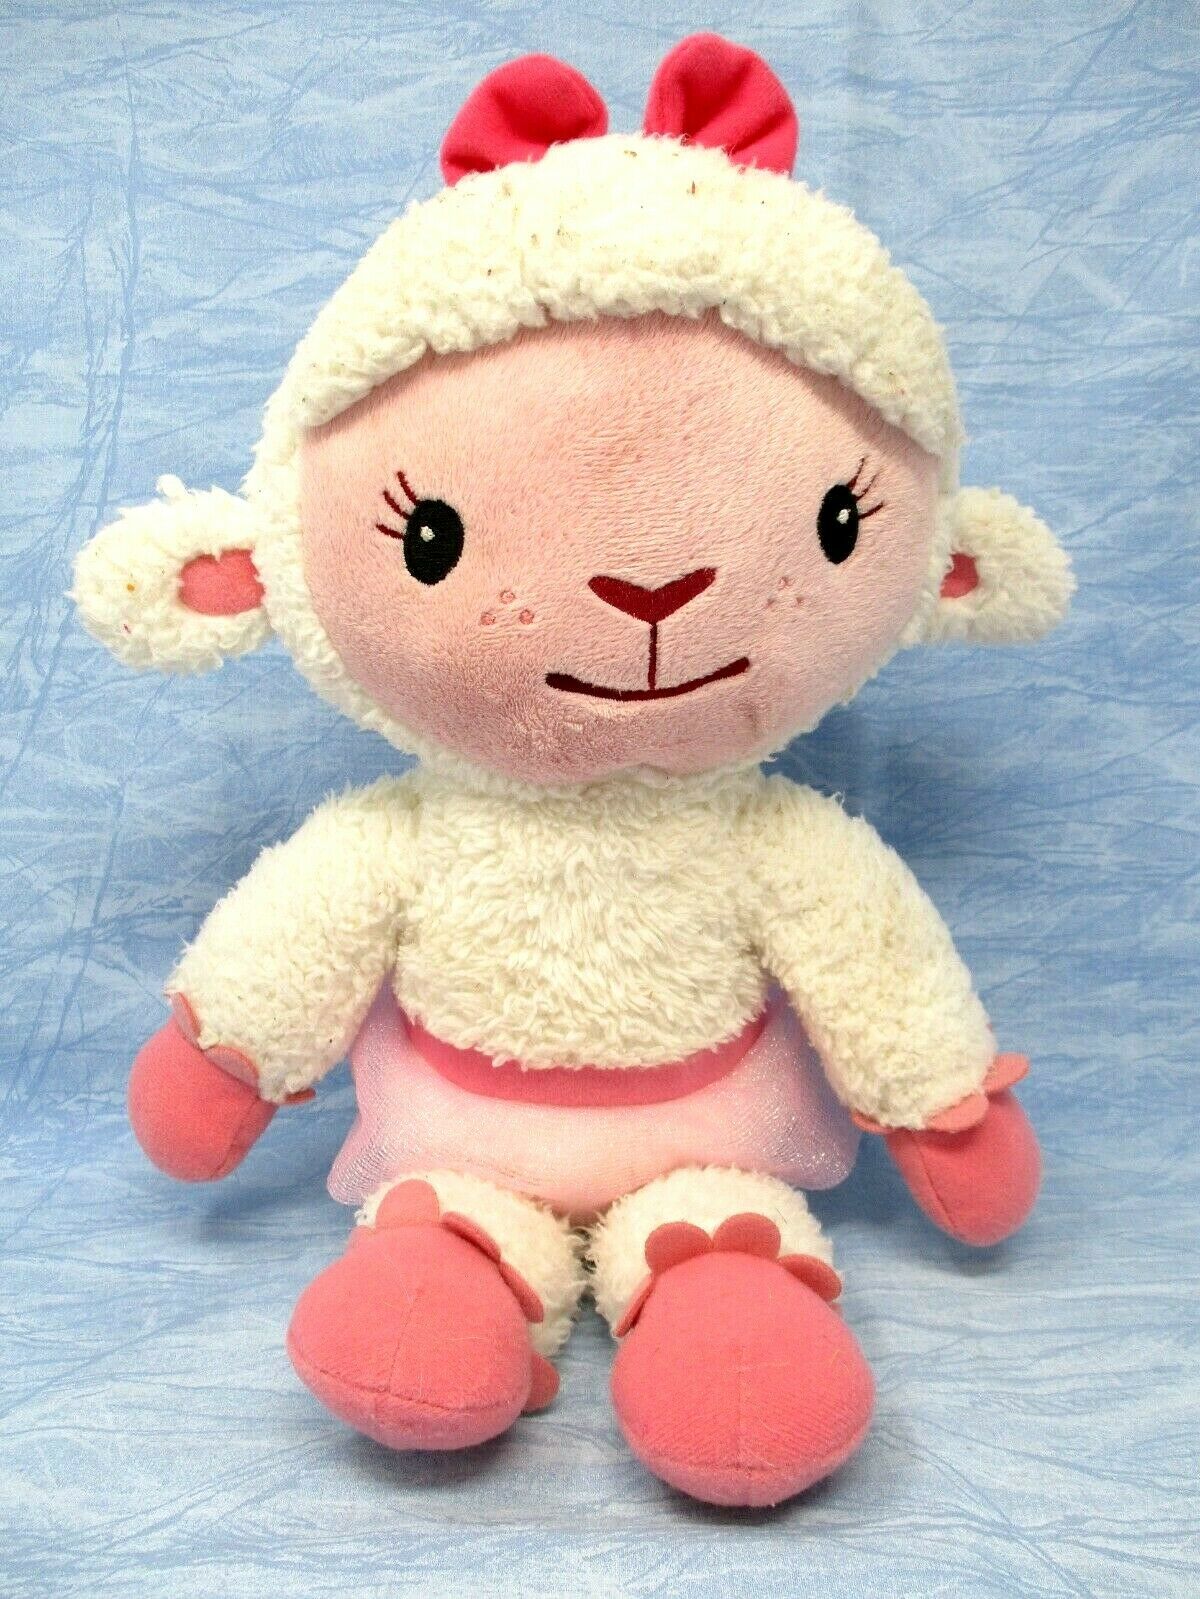 Doc Mcstuffins Lambie Plush Doll Talking Rattle 16" Stuffed Lamb Disney